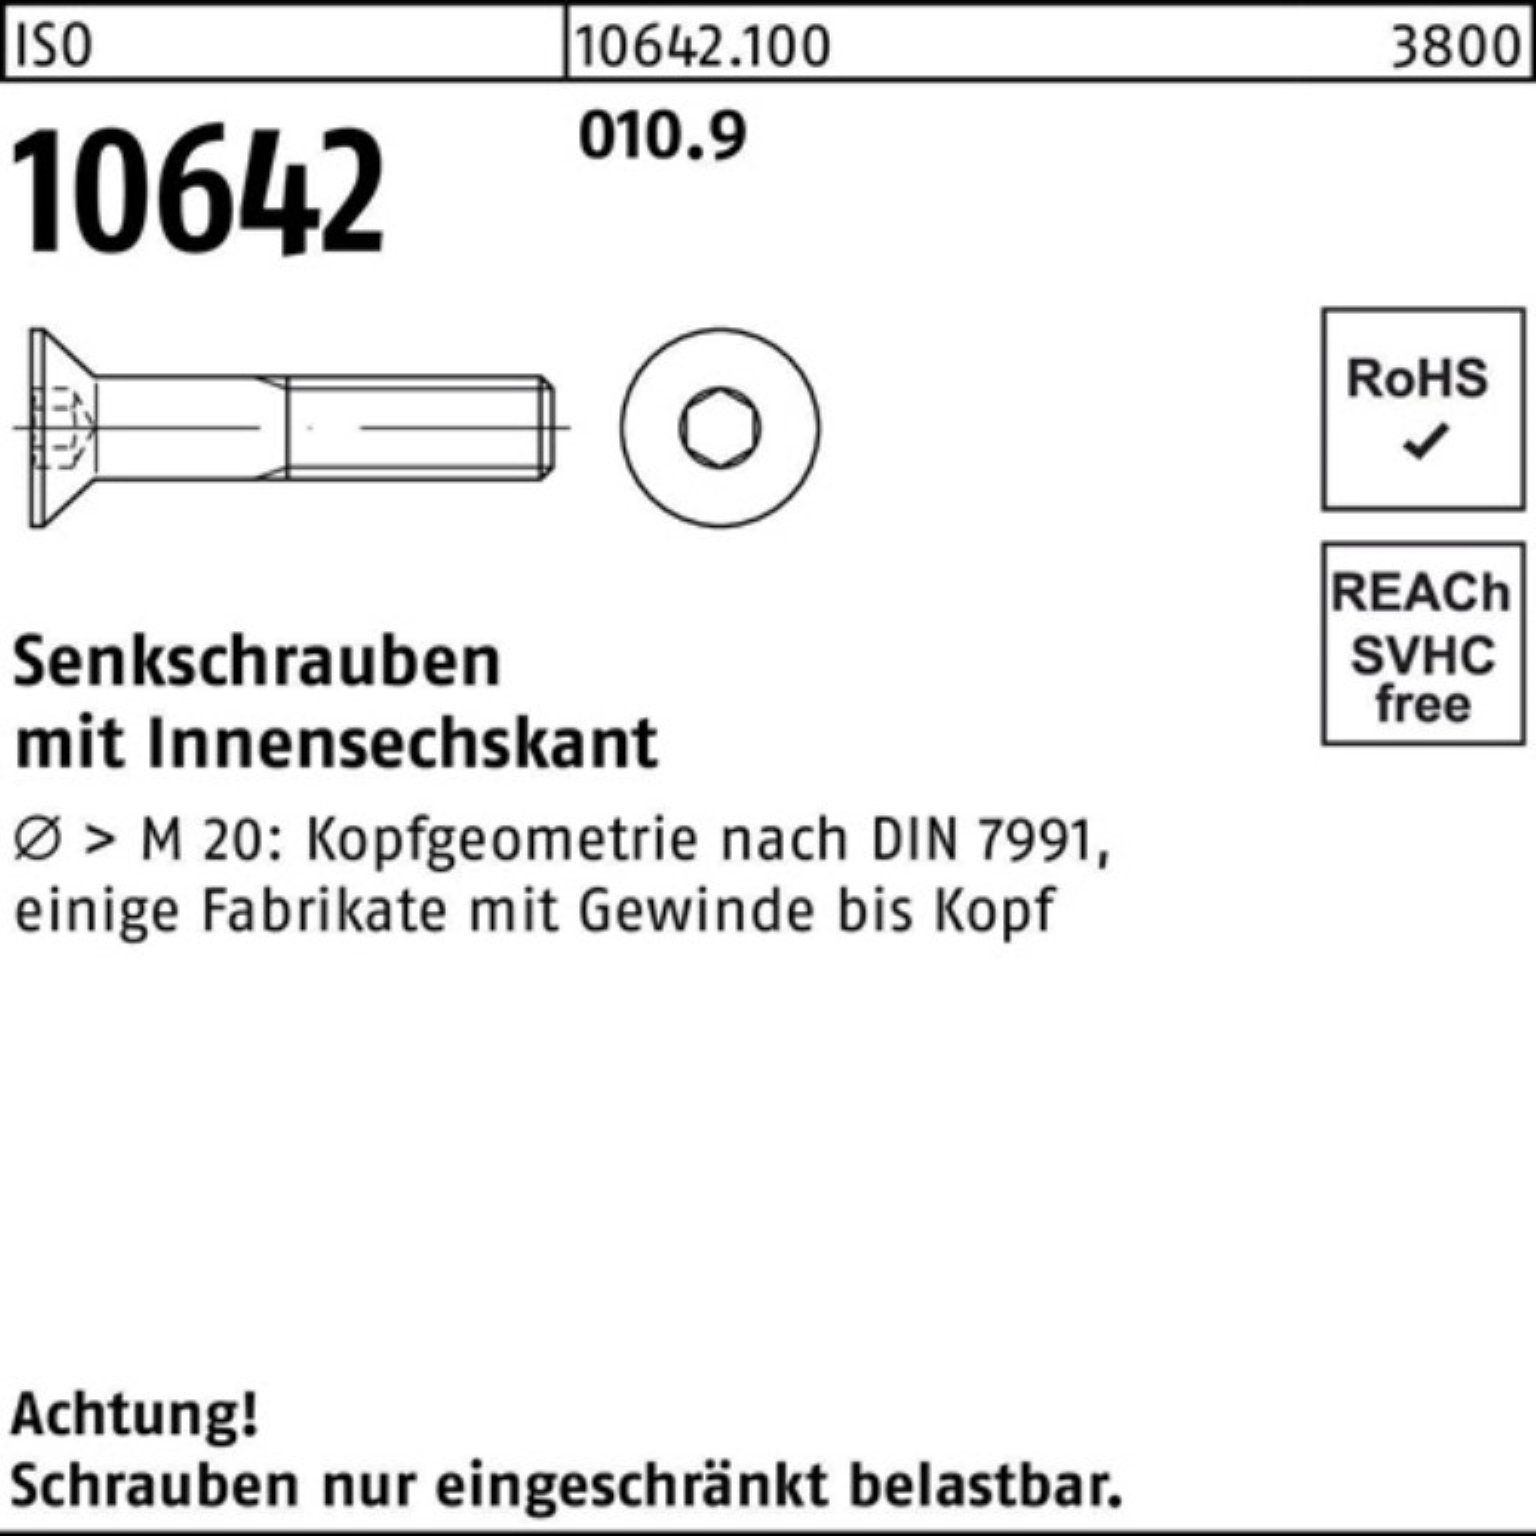 Reyher Senkschraube 500er Pack 12 10642 Stück IS M4x 010.9 Innen-6kt 500 ISO Senkschraube